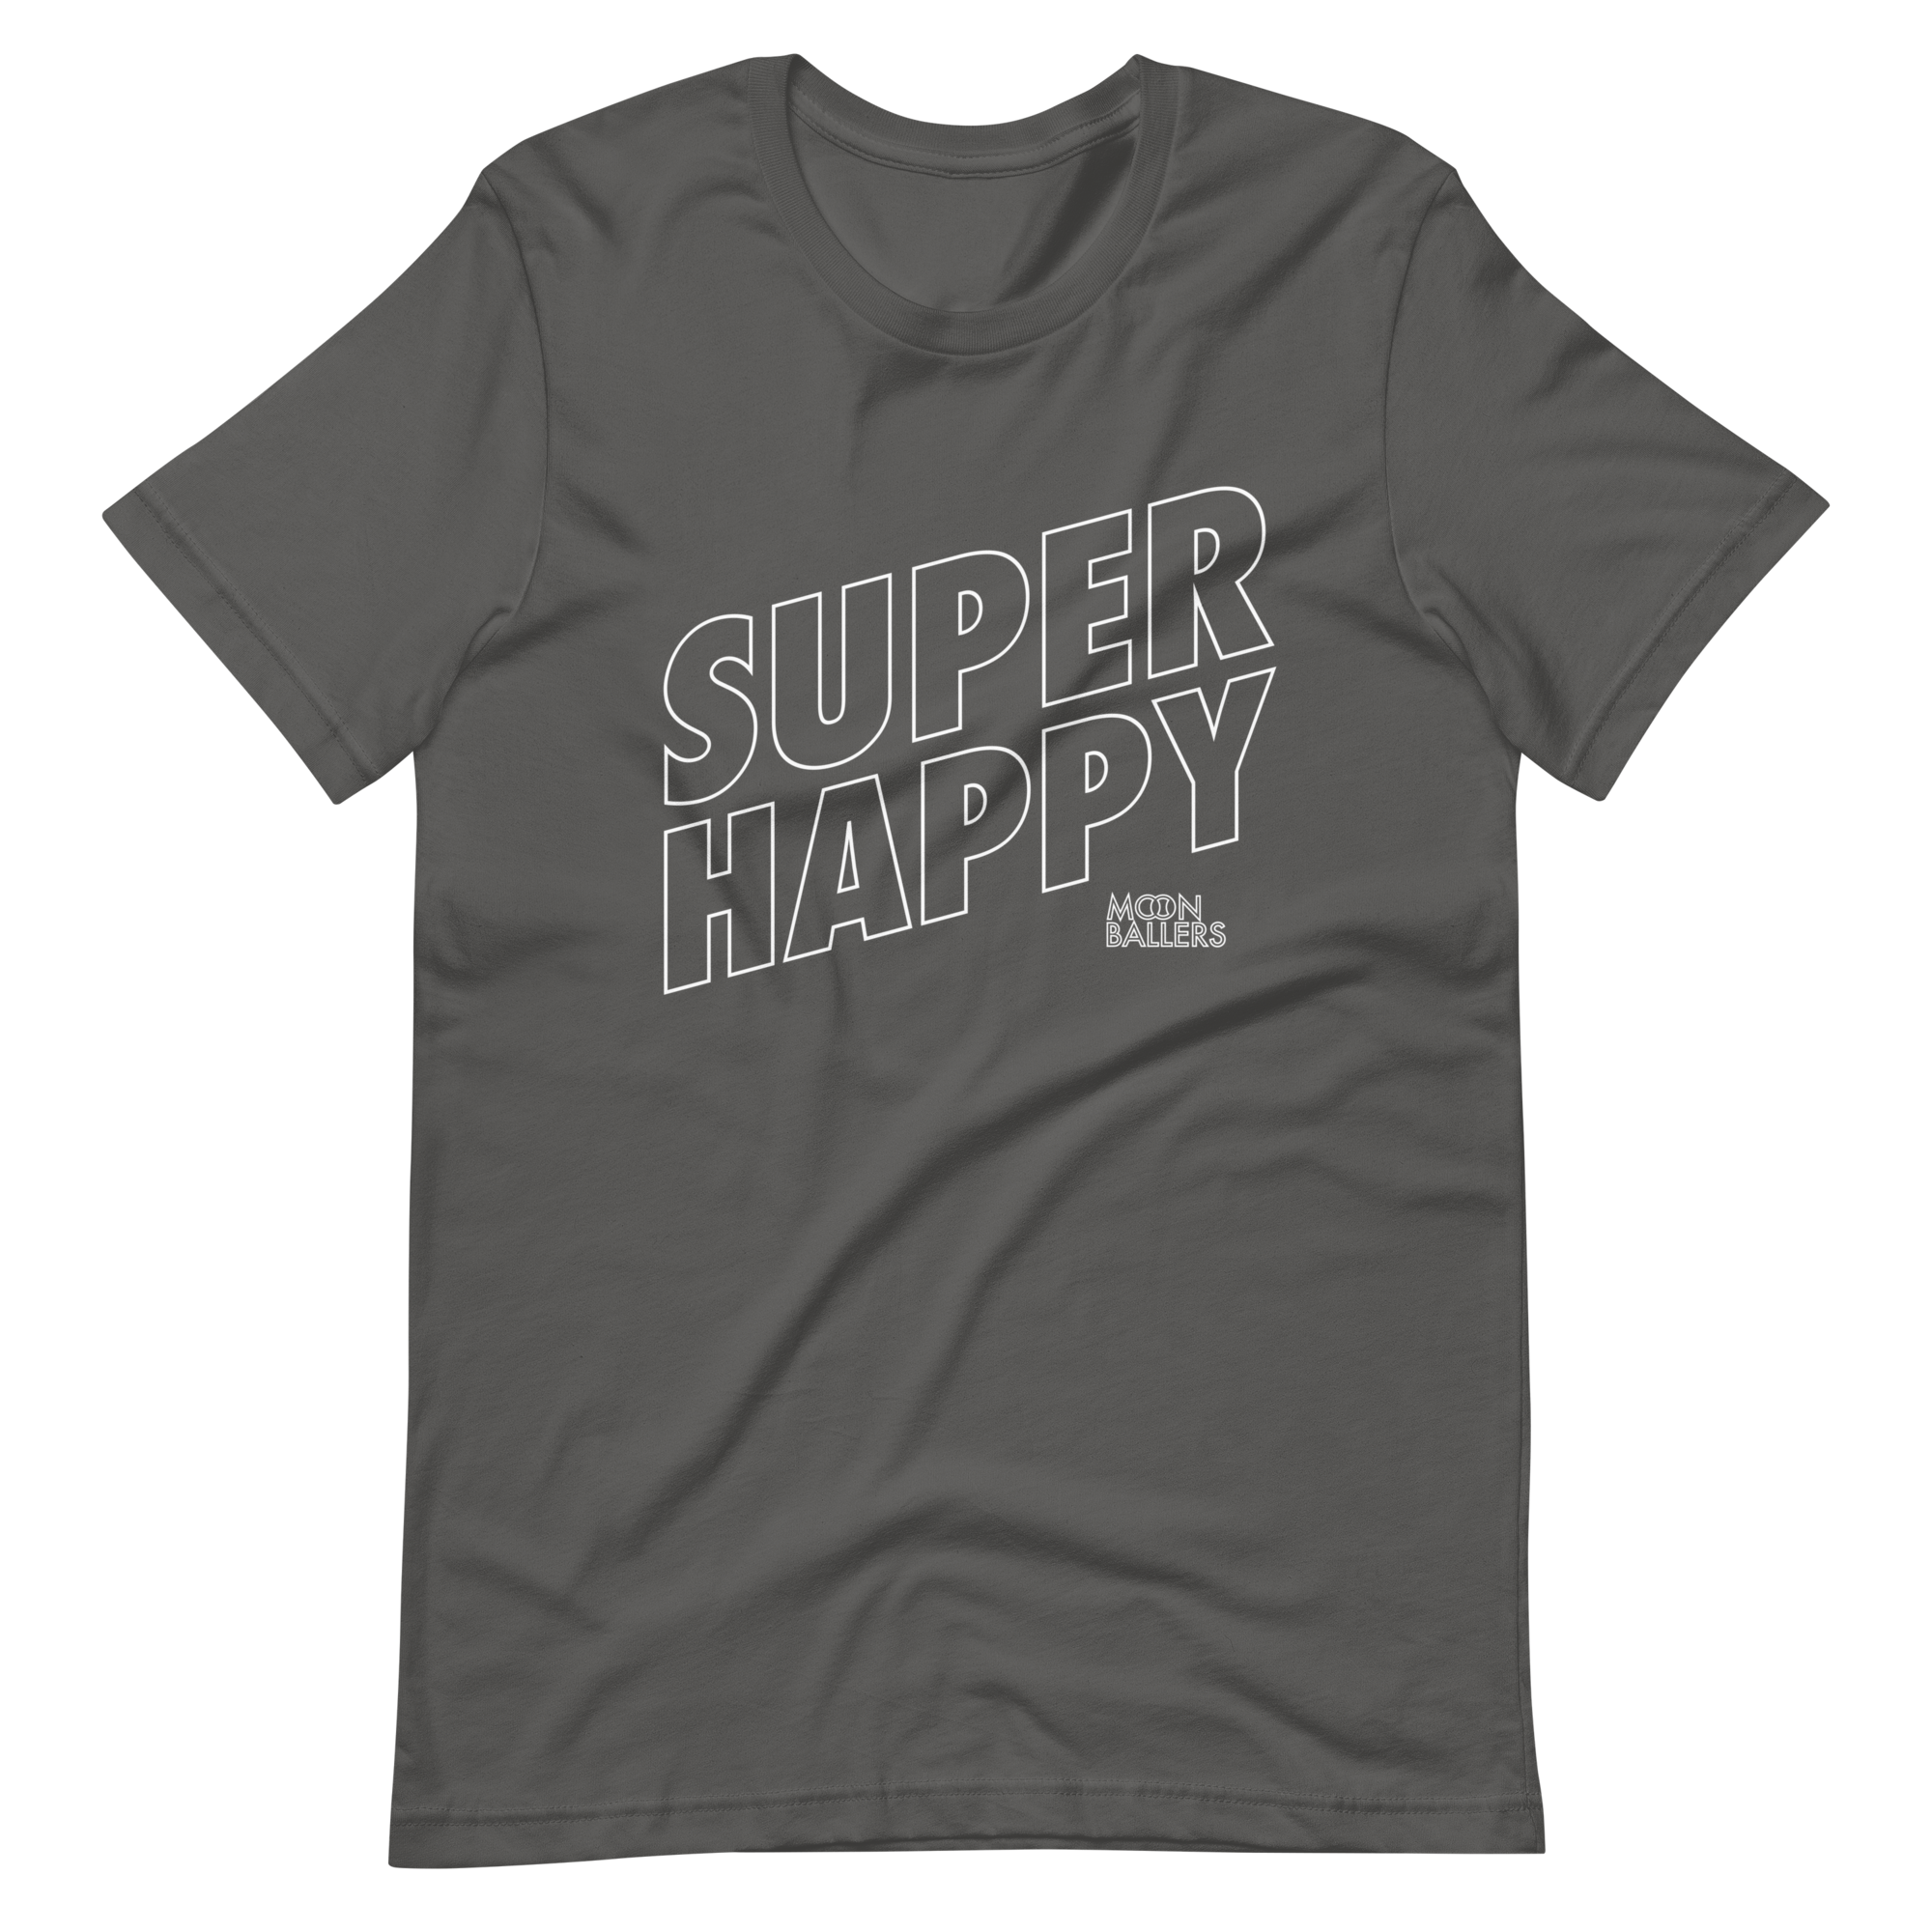 Super Duck T-Shirt